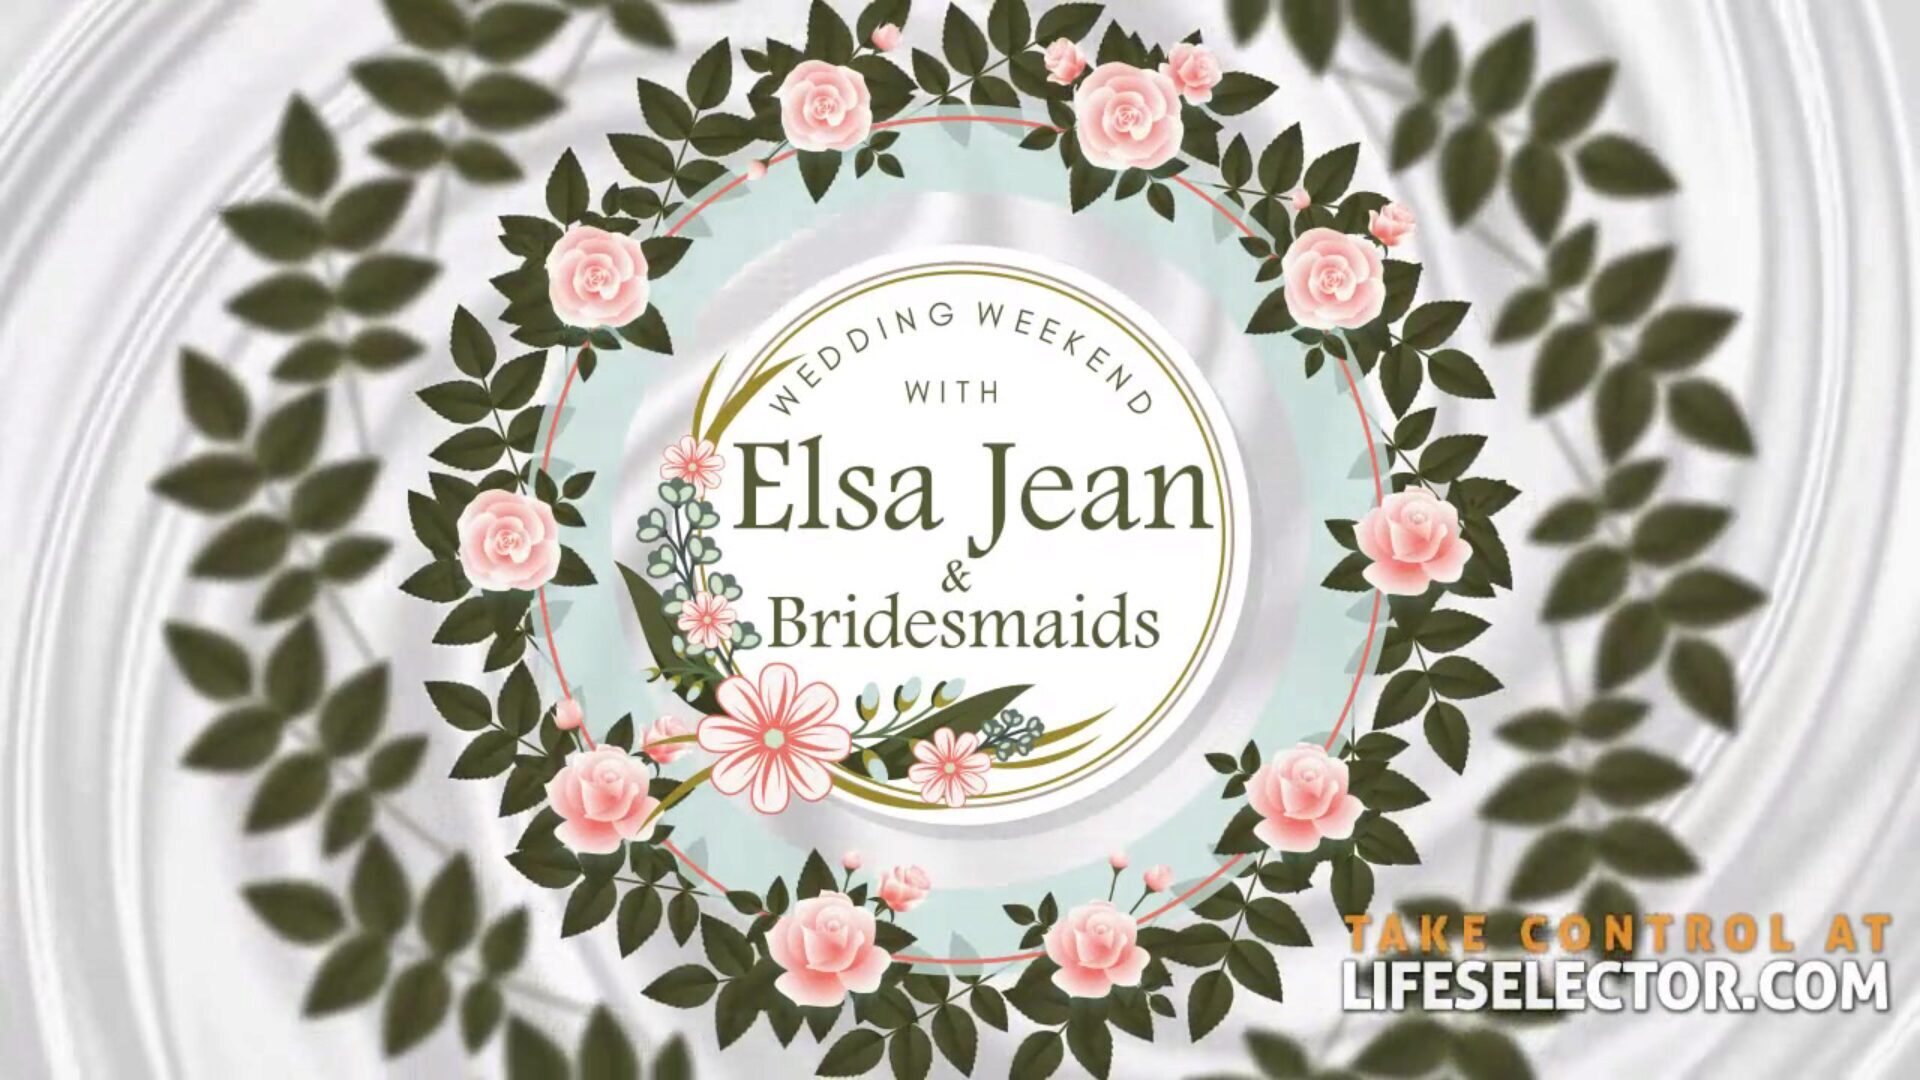 weekend weselny z Elsą Jean i druhenami